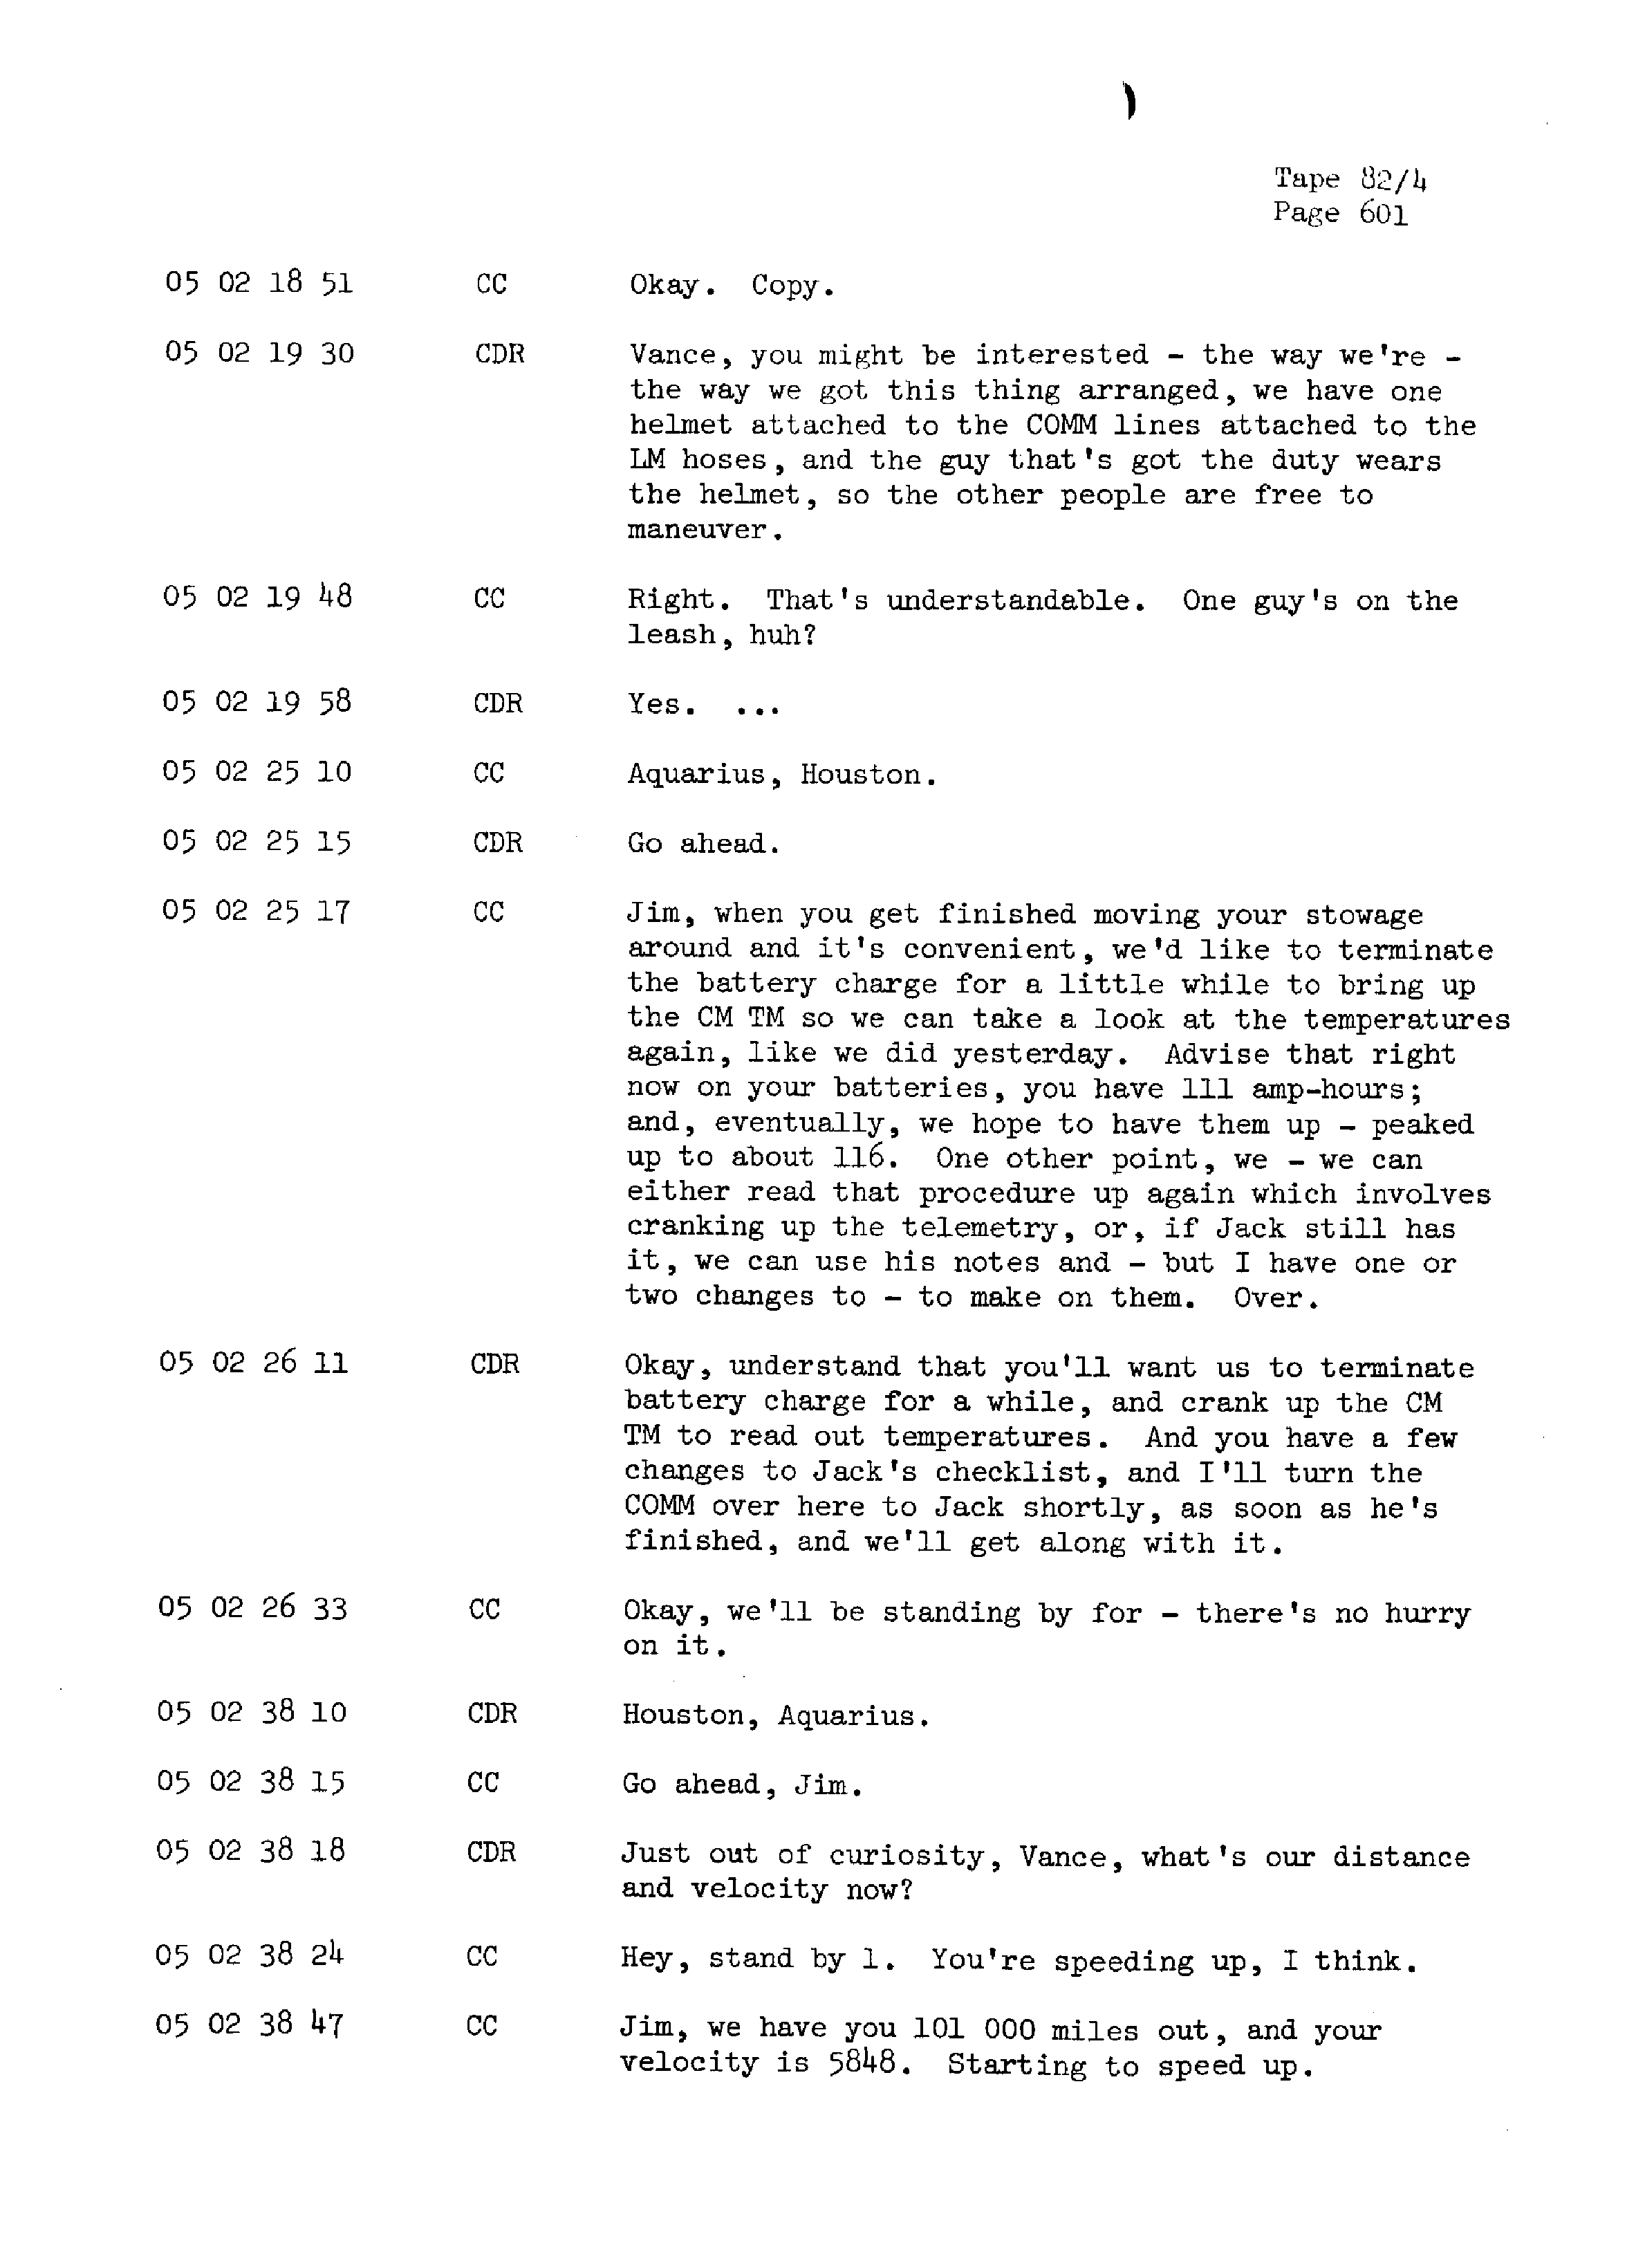 Page 608 of Apollo 13’s original transcript